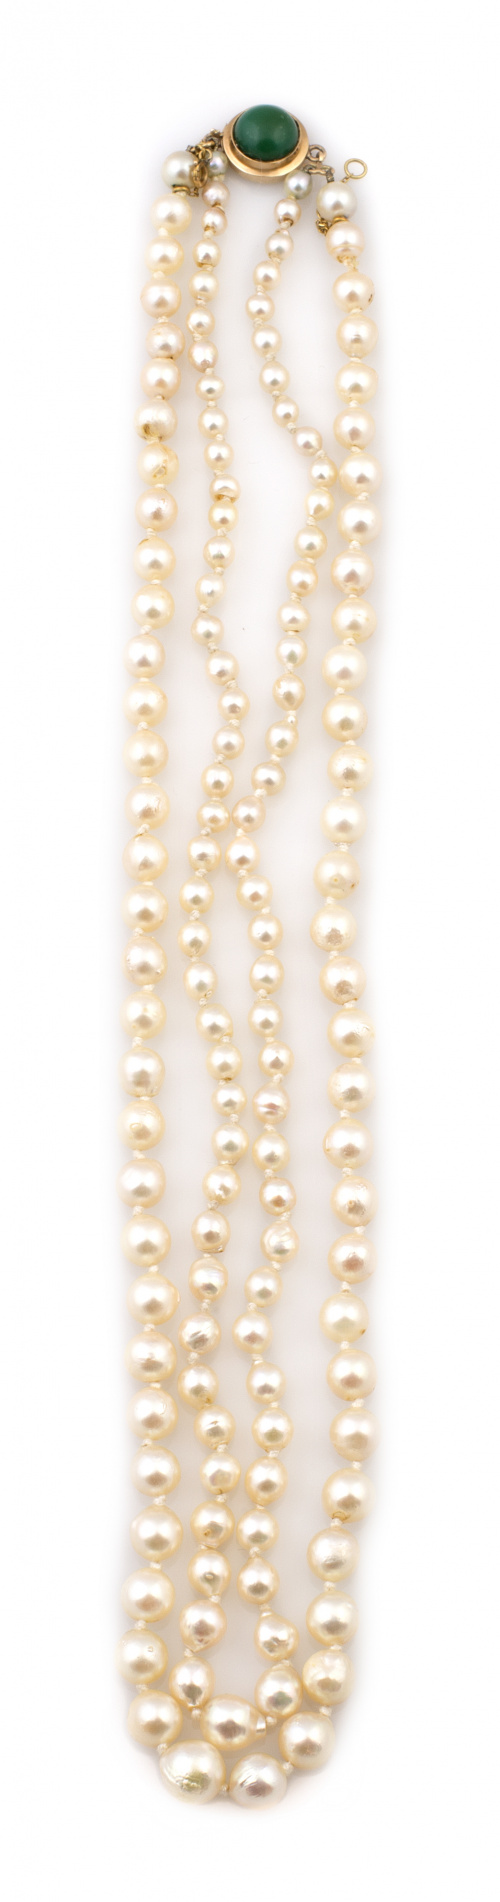 Collar de dos hilos de perlas cultivadas con cierre en oro 